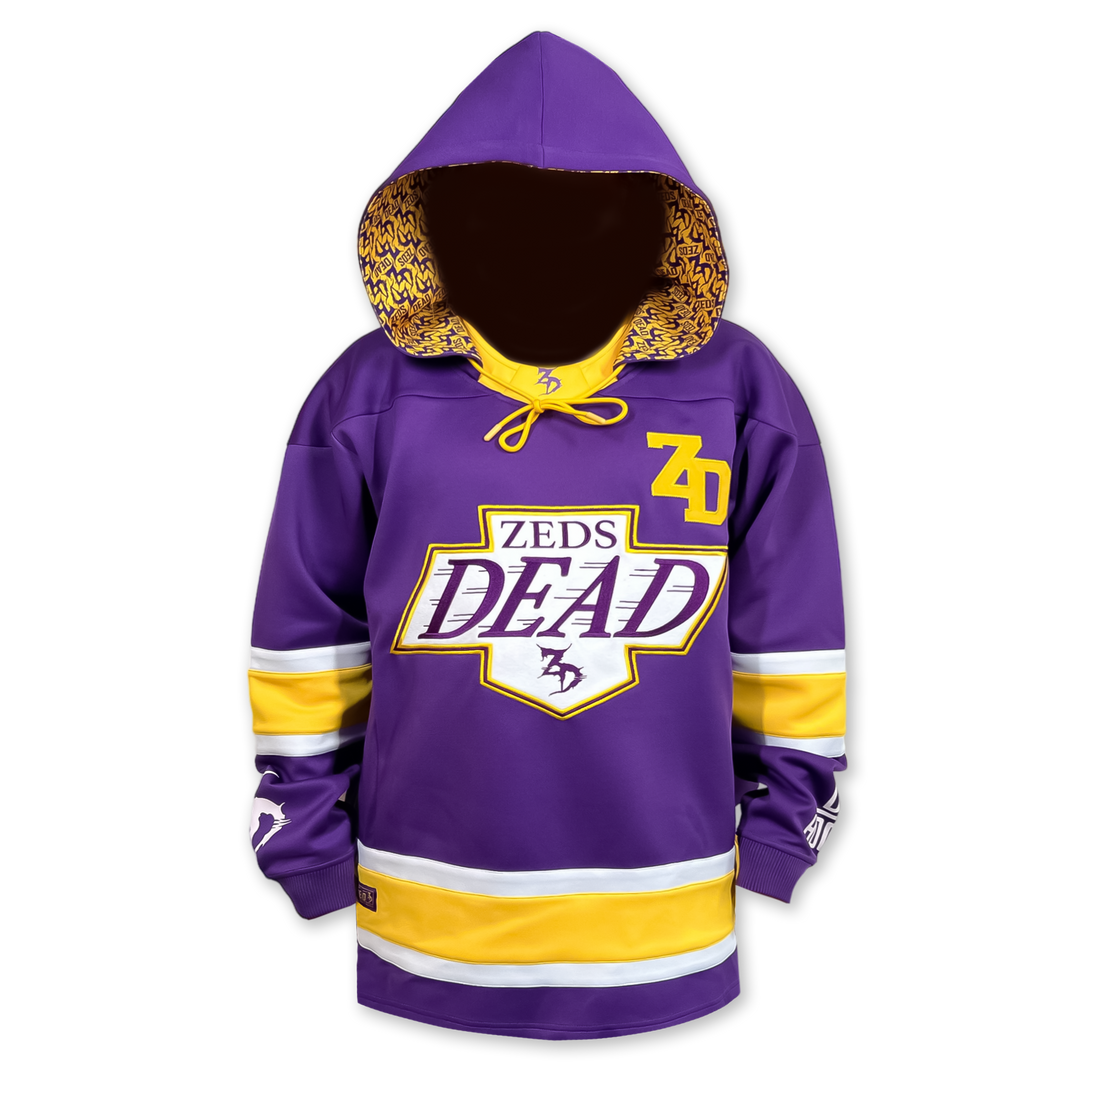 Zeds Dead - LA LA Land - Hooded Hockey Jersey